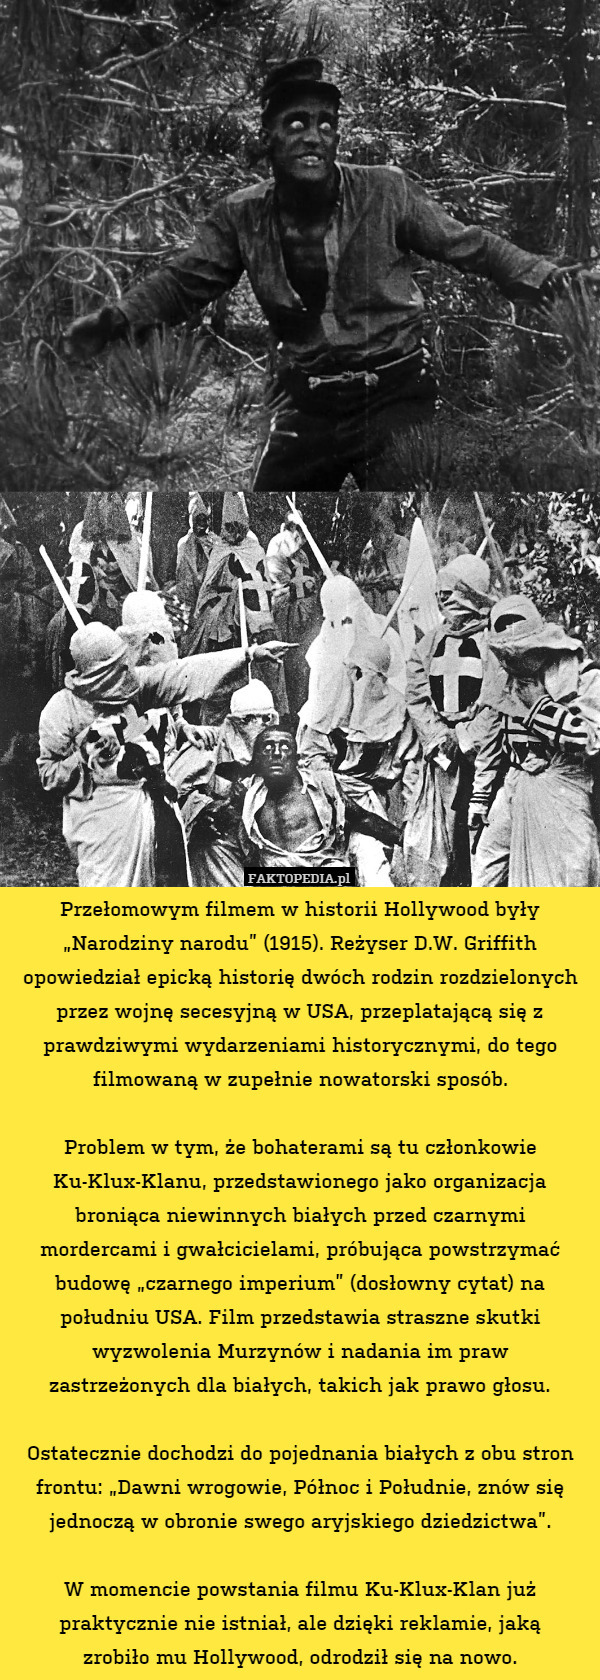 Przełomowym filmem w historii Hollywood były „Narodziny narodu” (1915). Reżyser D.W. Griffith opowiedział epicką historię dwóch rodzin rozdzielonych przez wojnę secesyjną w USA, przeplatającą się z prawdziwymi wydarzeniami historycznymi, do tego filmowaną w zupełnie nowatorski sposób.

Problem w tym, że bohaterami są tu członkowie Ku-Klux-Klanu, przedstawionego jako organizacja broniąca niewinnych białych przed czarnymi
mordercami i gwałcicielami, próbująca powstrzymać budowę „czarnego imperium” (dosłowny cytat) na południu USA. Film przedstawia straszne skutki wyzwolenia Murzynów i nadania im praw
zastrzeżonych dla białych, takich jak prawo głosu.

Ostatecznie dochodzi do pojednania białych z obu stron frontu: „Dawni wrogowie, Północ i Południe, znów się jednoczą w obronie swego aryjskiego dziedzictwa”.

W momencie powstania filmu Ku-Klux-Klan już praktycznie nie istniał, ale dzięki reklamie, jaką
zrobiło mu Hollywood, odrodził się na nowo. 